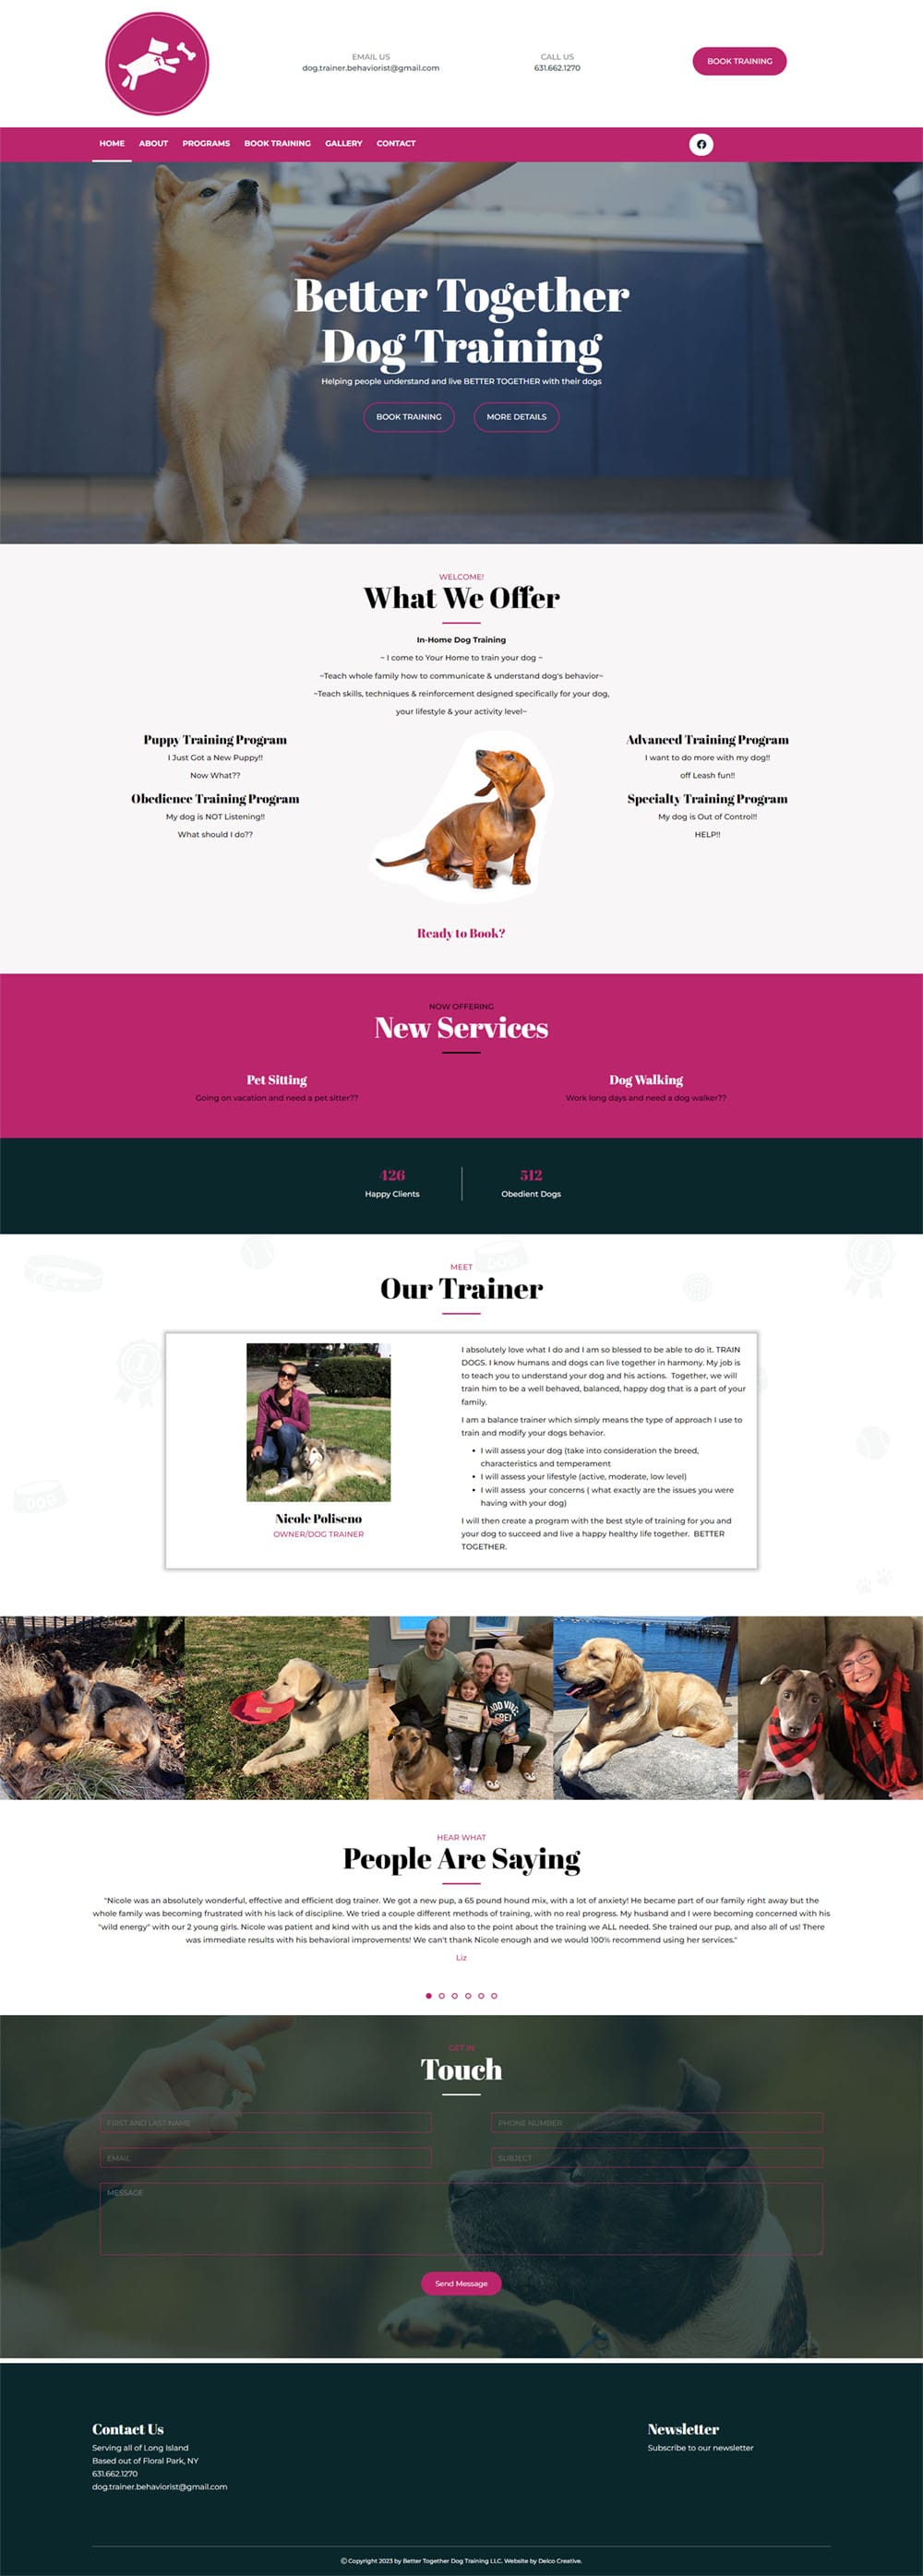 Better Together Dog Training Website